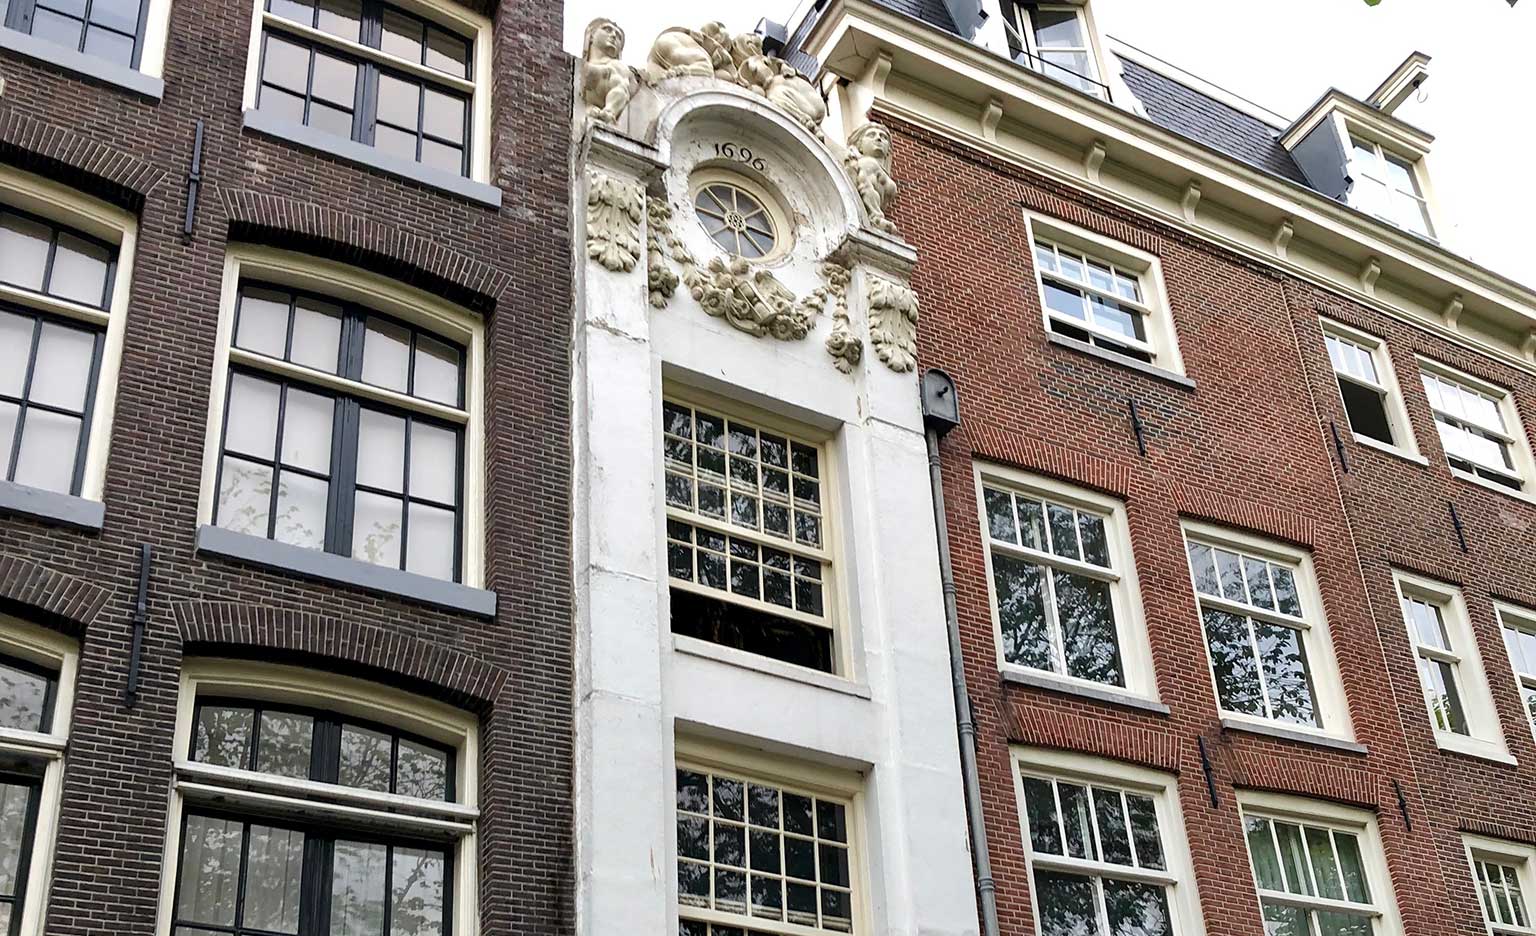 The little Trippenhuis, Kloveniersburgwal 26, Amsterdam